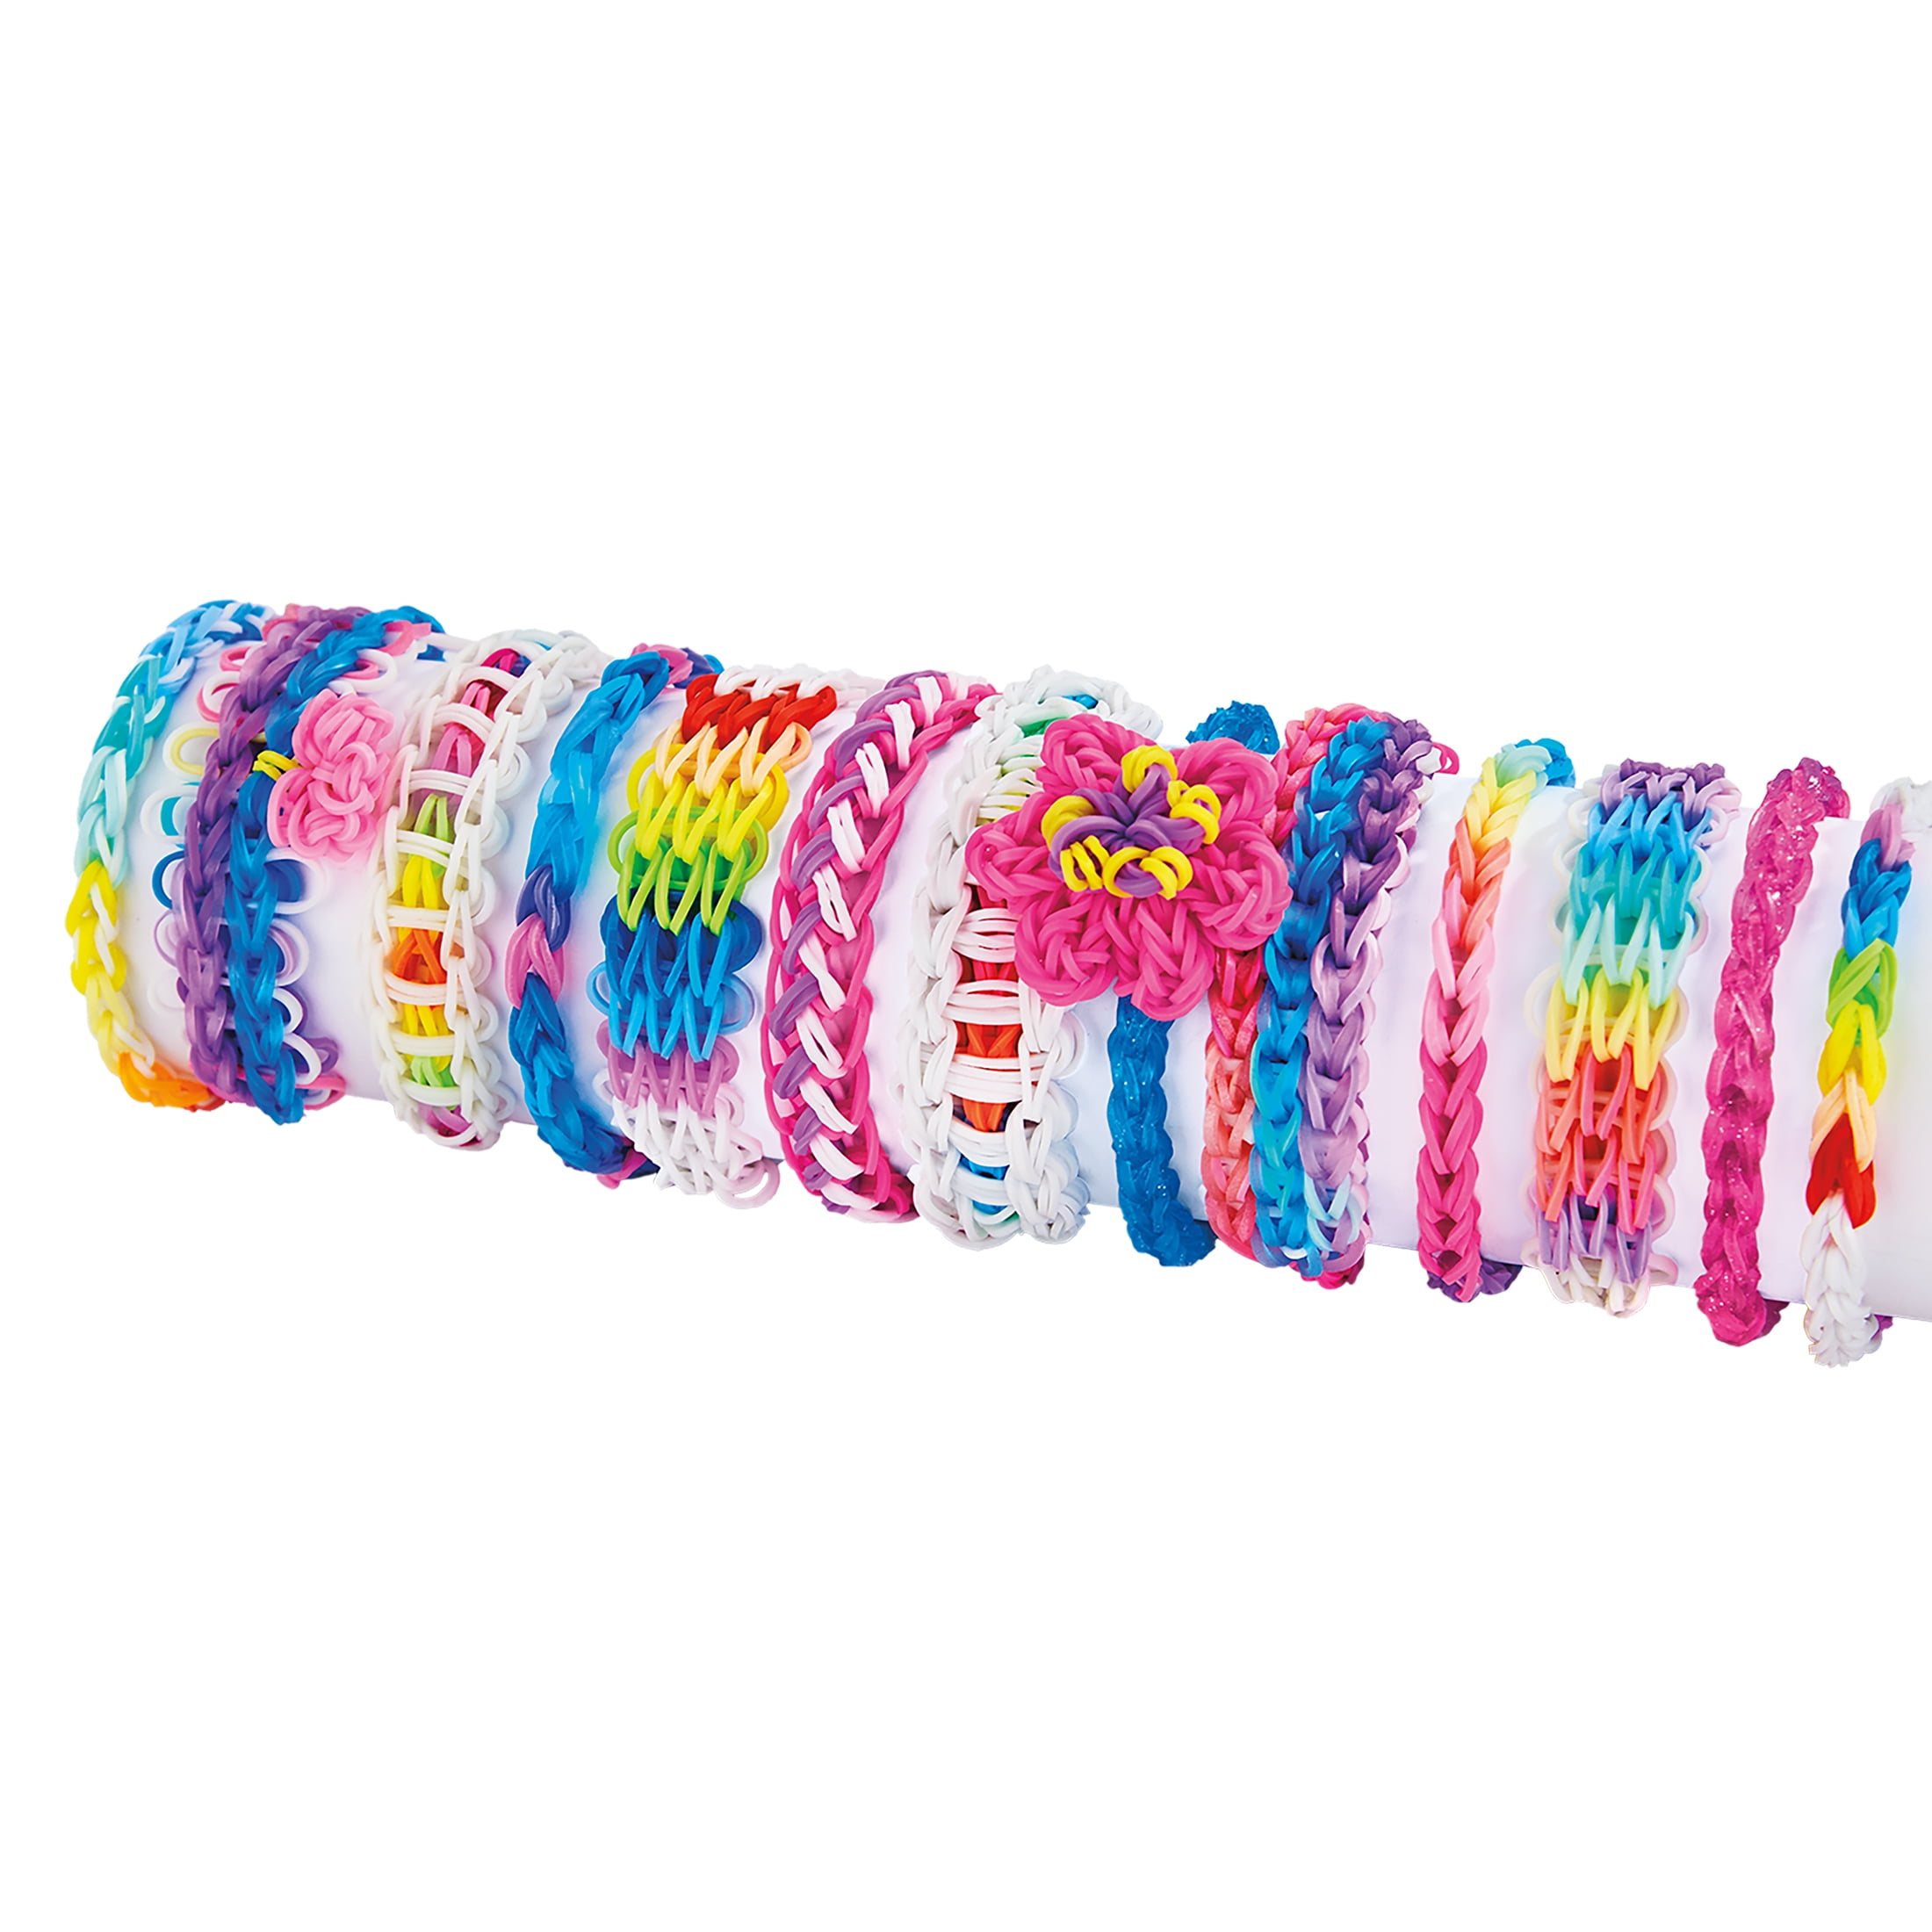 Cra-Z-Loom Rubber Band Bracelet Maker Kit - Runnings